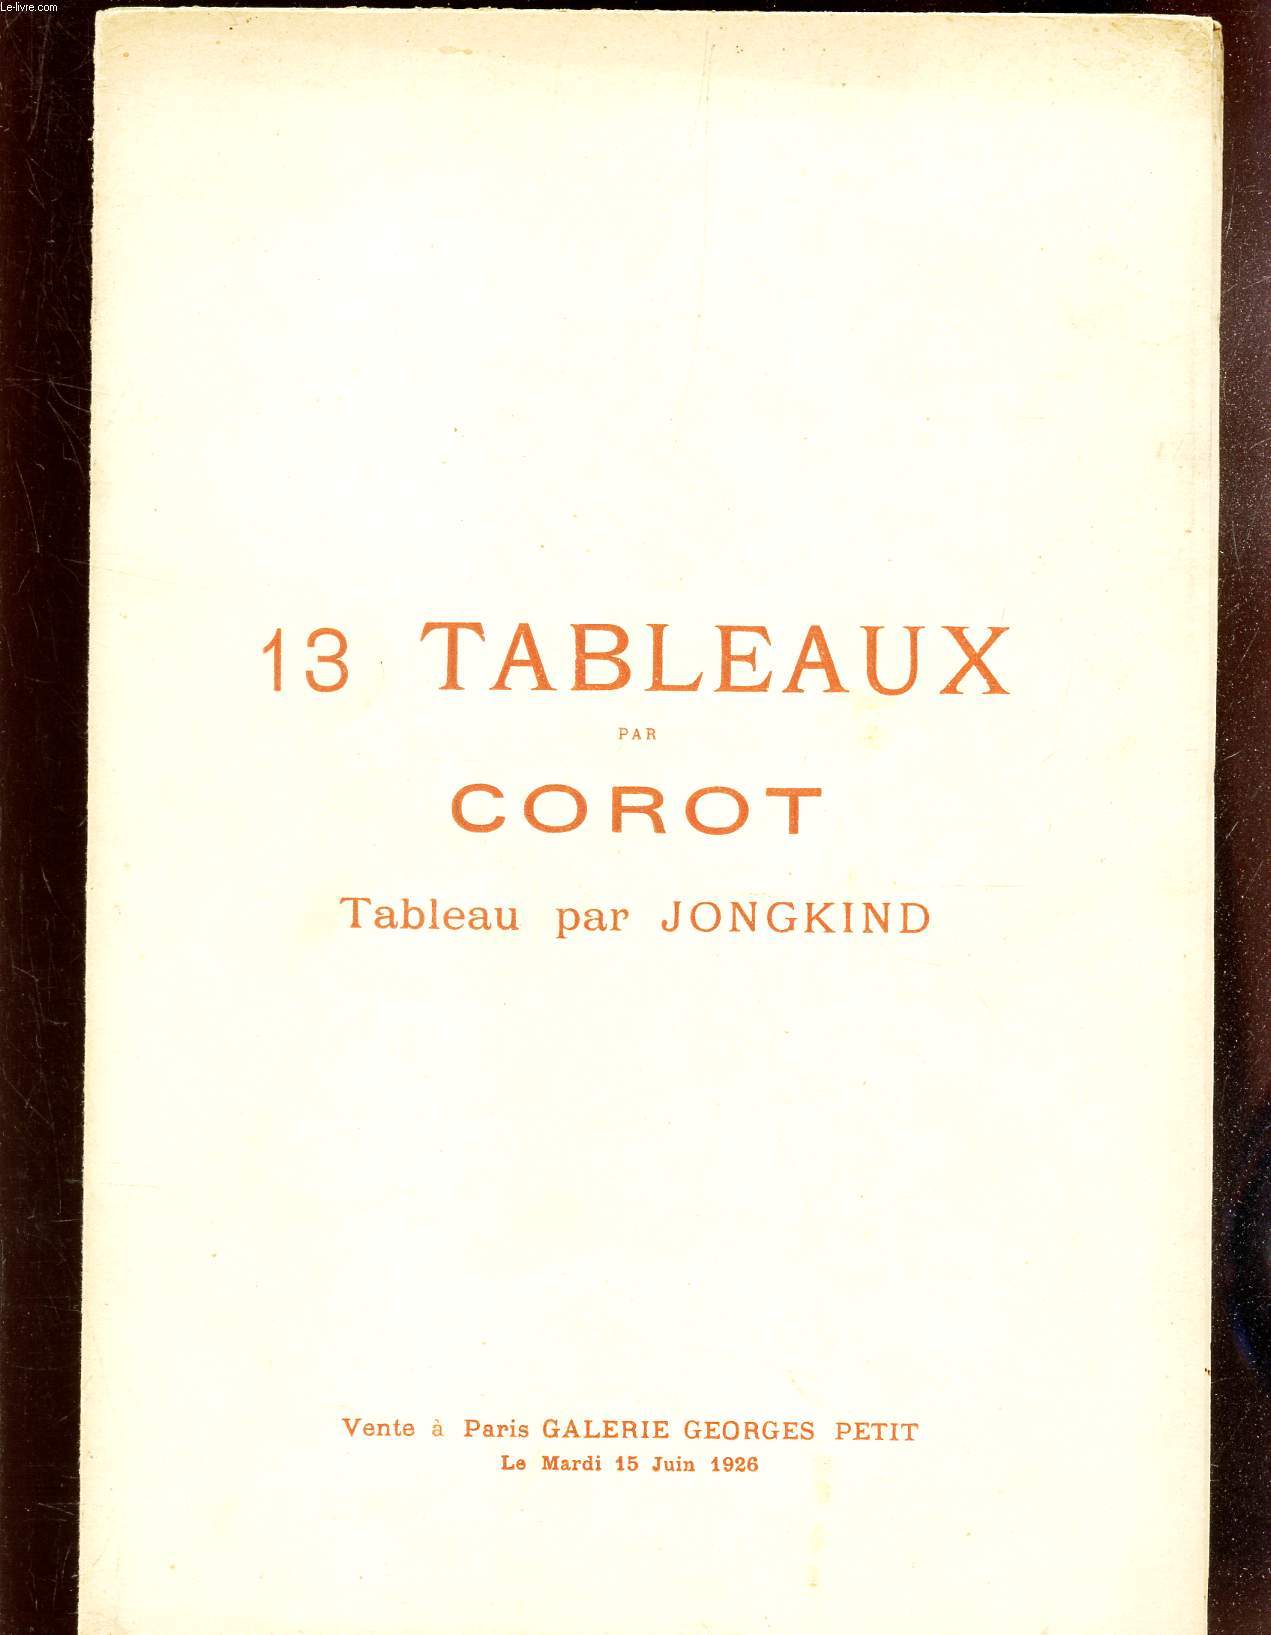 CATALOGUEDE 13 TABLEAUX PAR COROT - TABLEAU PAR JONGKIND - portrait de Corot, par Bouch - GALERIE GEORGES PETIT LE 15 JUIN 1926